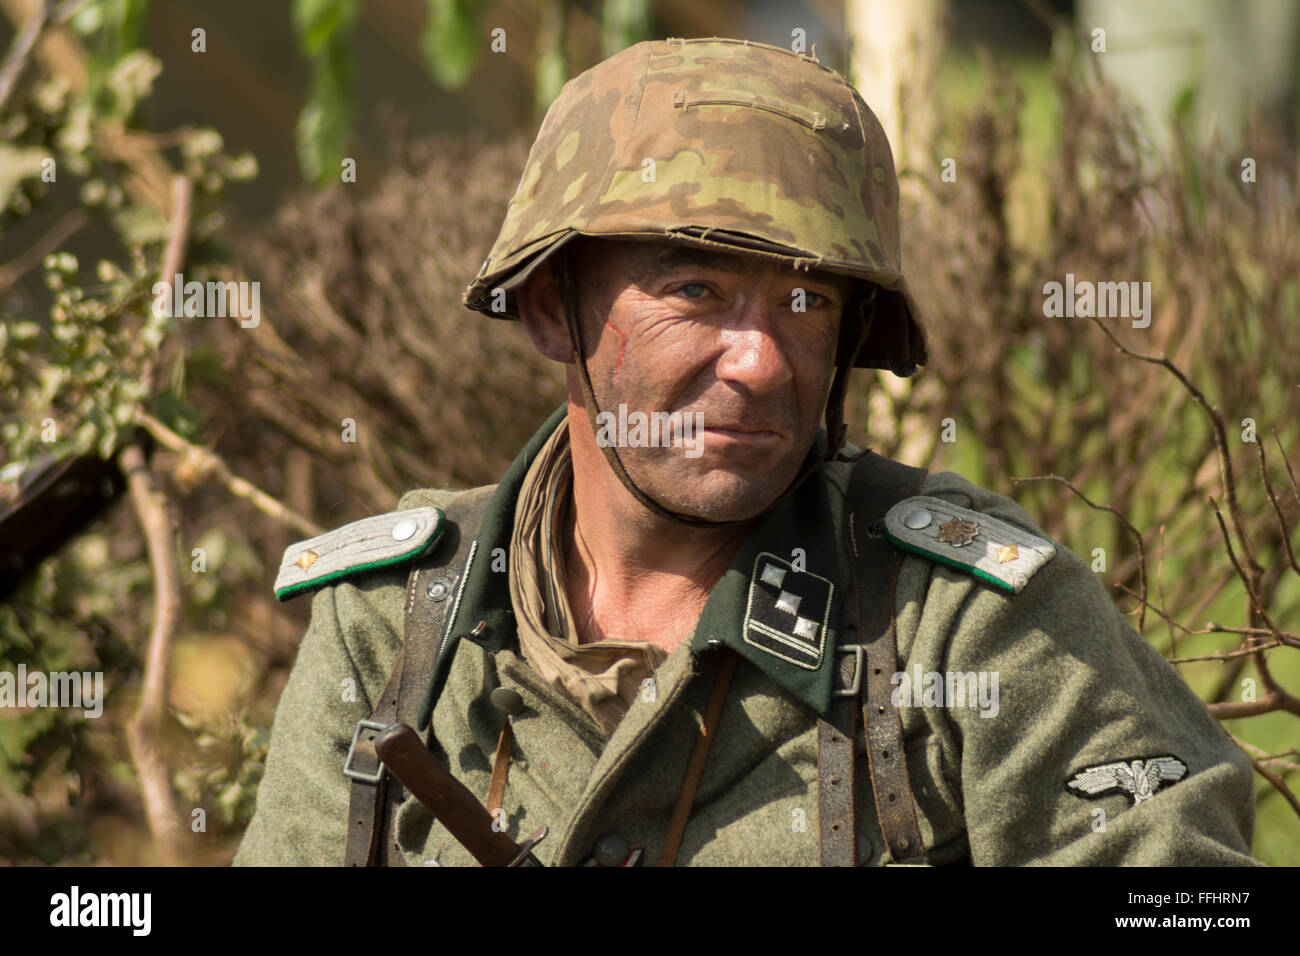 Homme habillé comme la Seconde Guerre mondiale soldat allemand prêt à prendre part au combat re-enactment. Banque D'Images